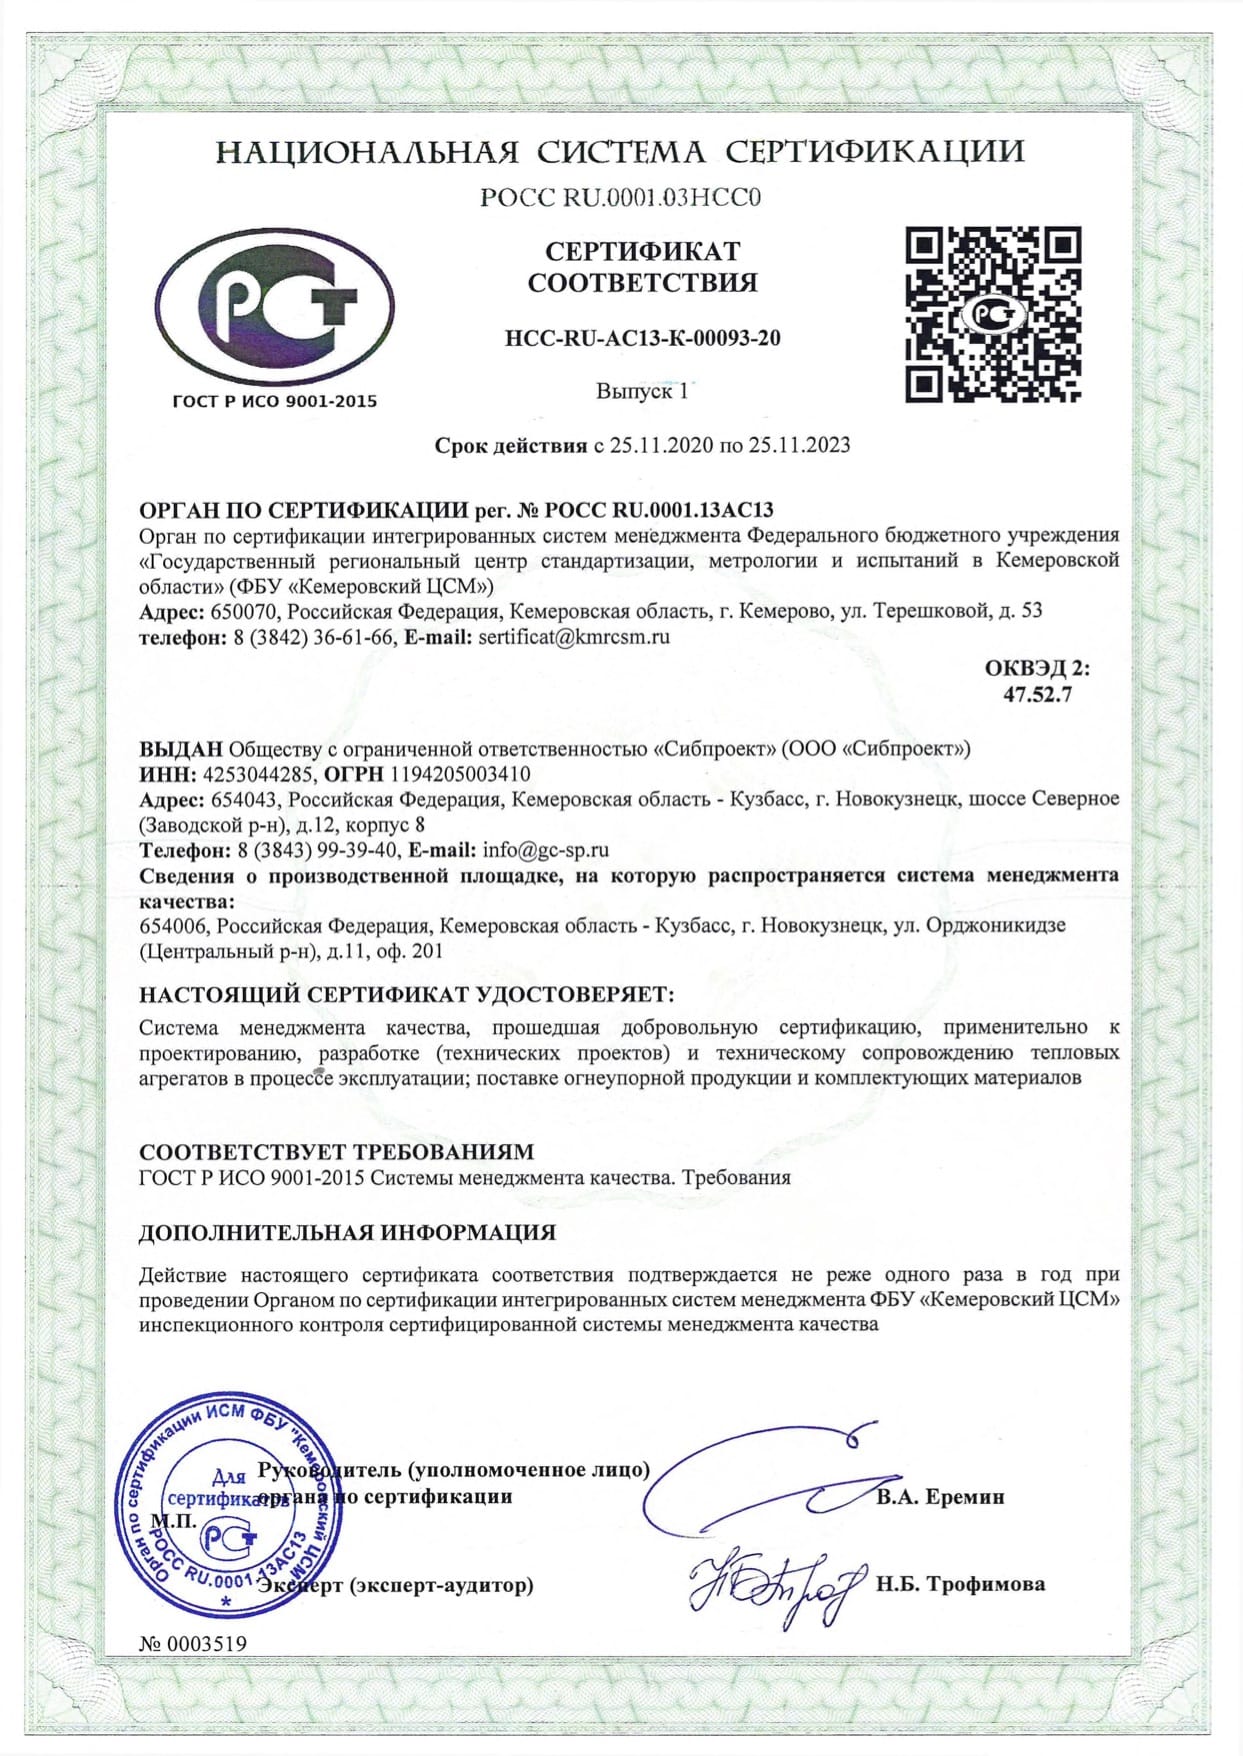 Сертификат соответствия СМК ГОСТ Р ИСО 9001 (русский).